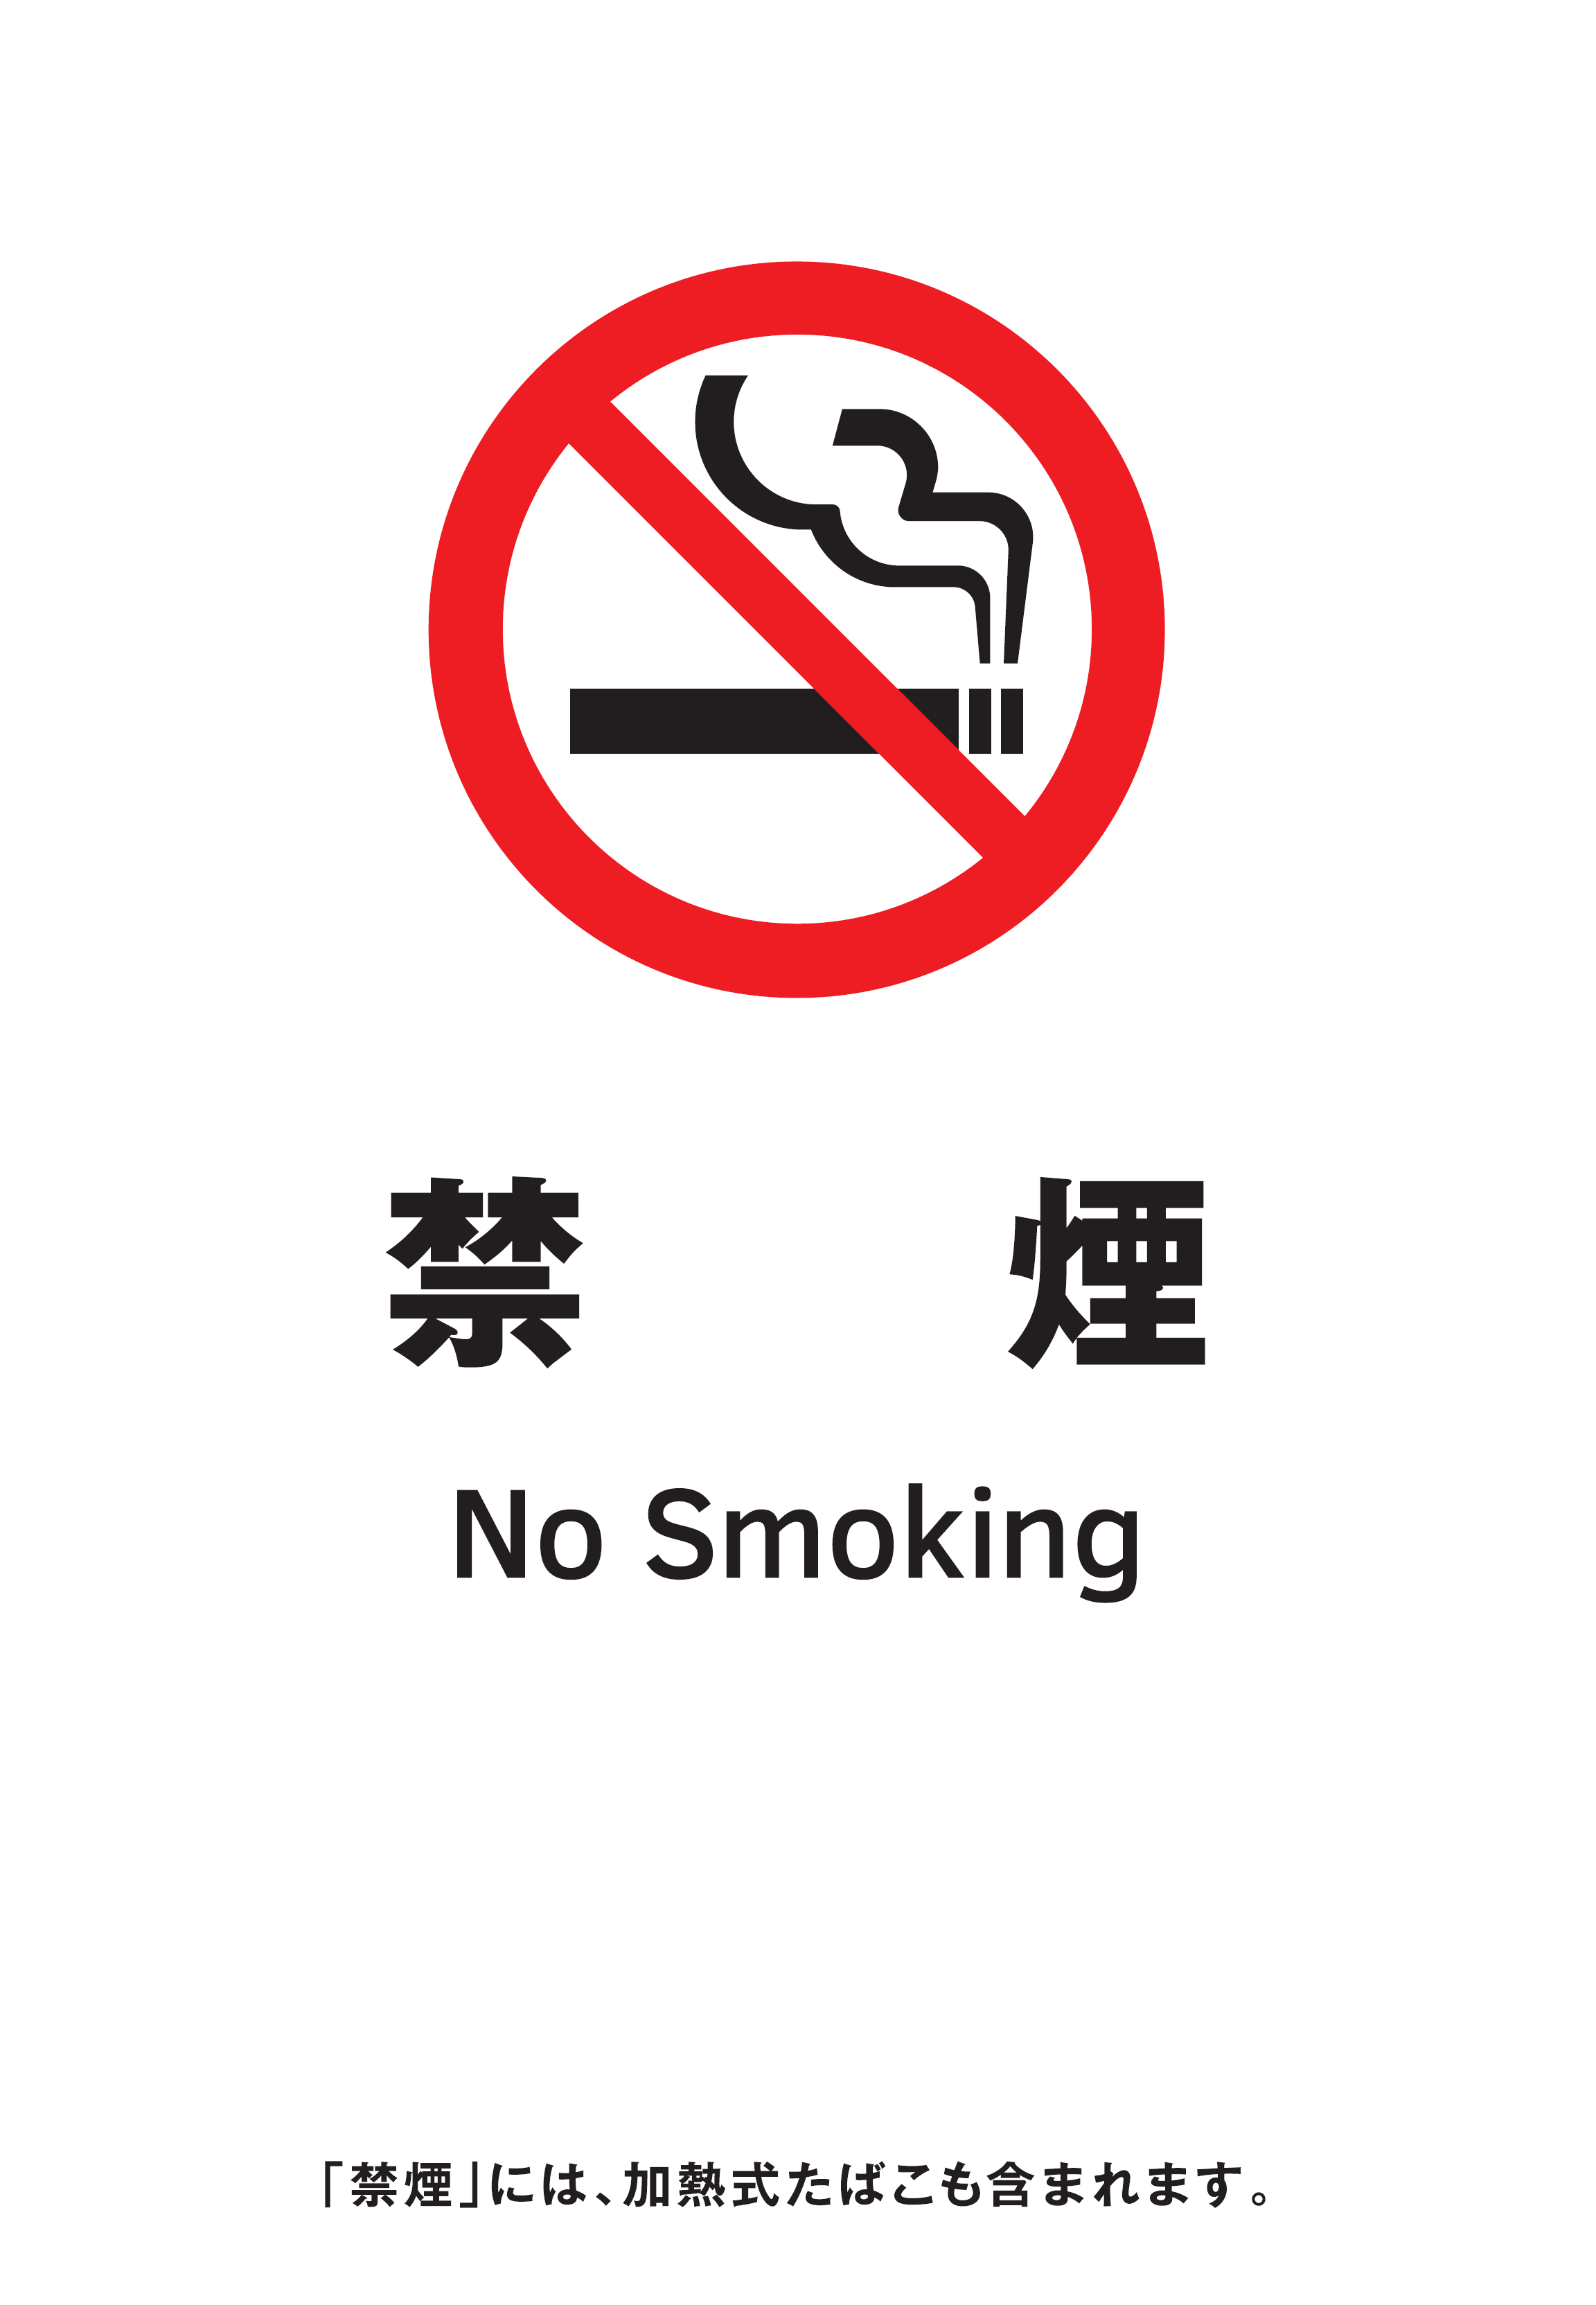 禁煙の標識